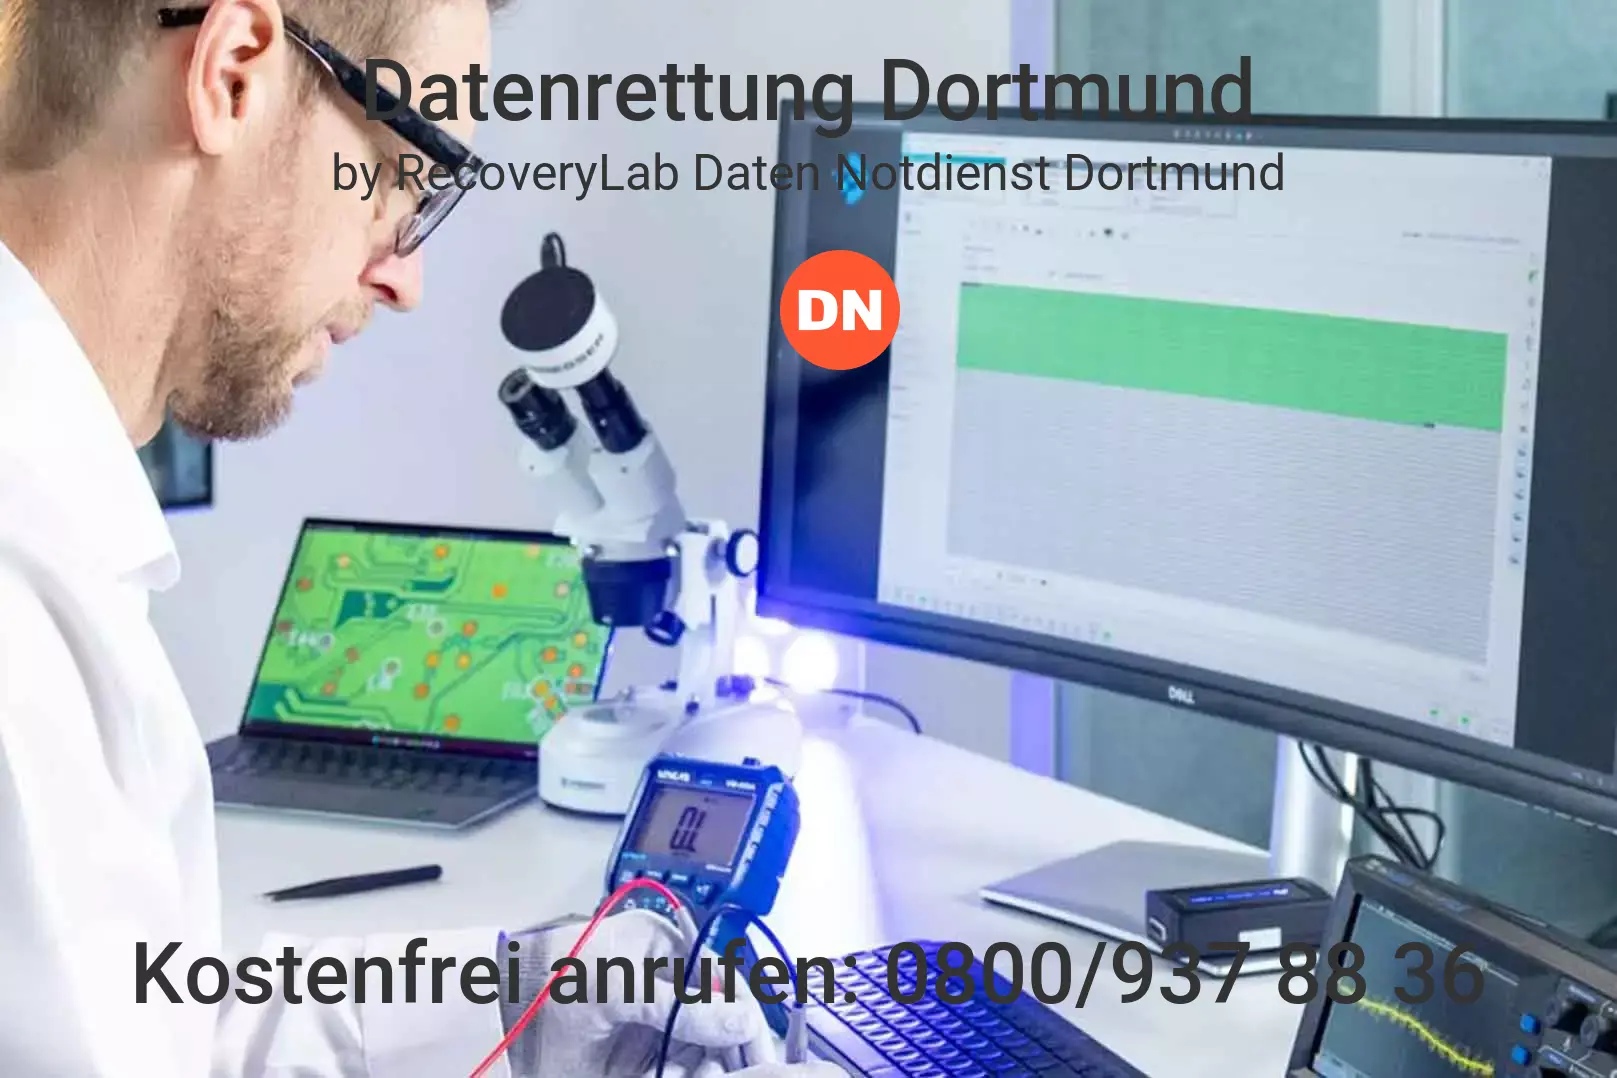 Fallstudie zu erfolgreicher Datenrettung virtuelle Maschine Dortmund